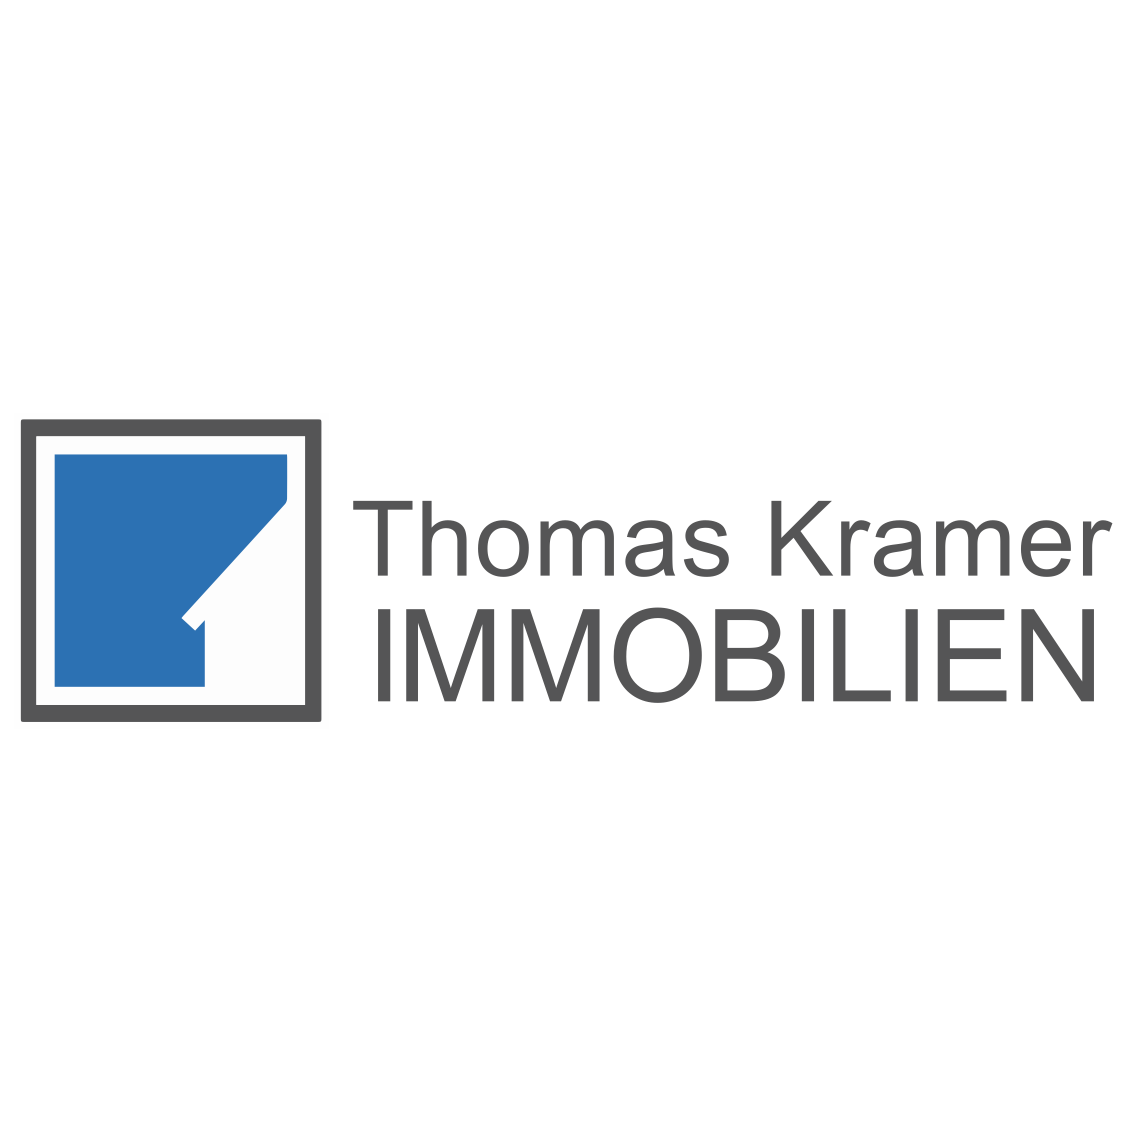 Thomas Kramer IMMOBILIEN  